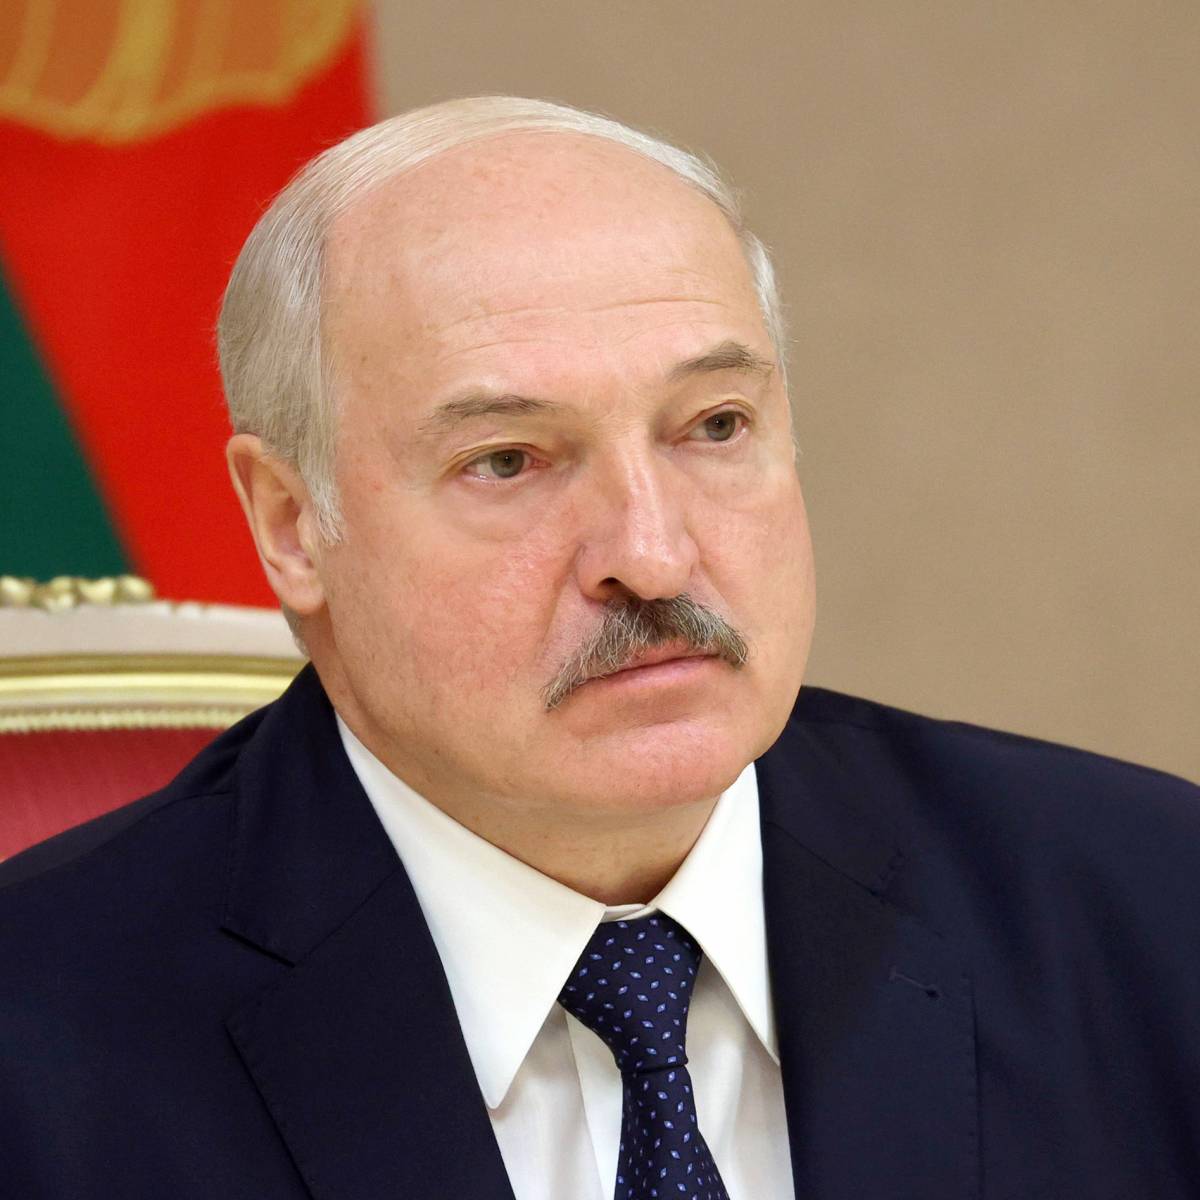 "Стреляли поверх голов". Лукашенко о ситуации на границе с Польшей